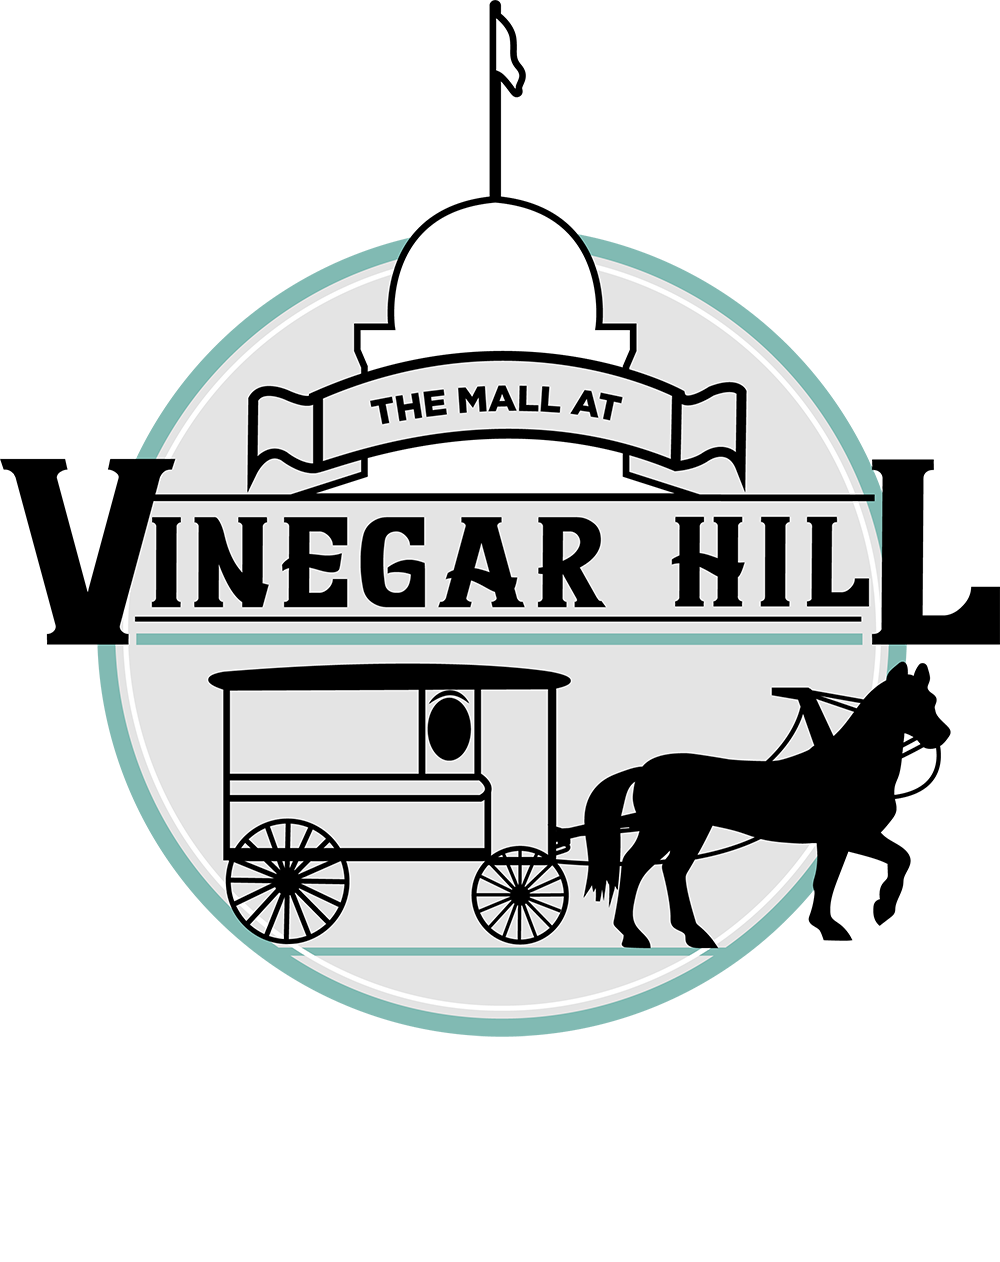 Vinegar Hill Mall logo